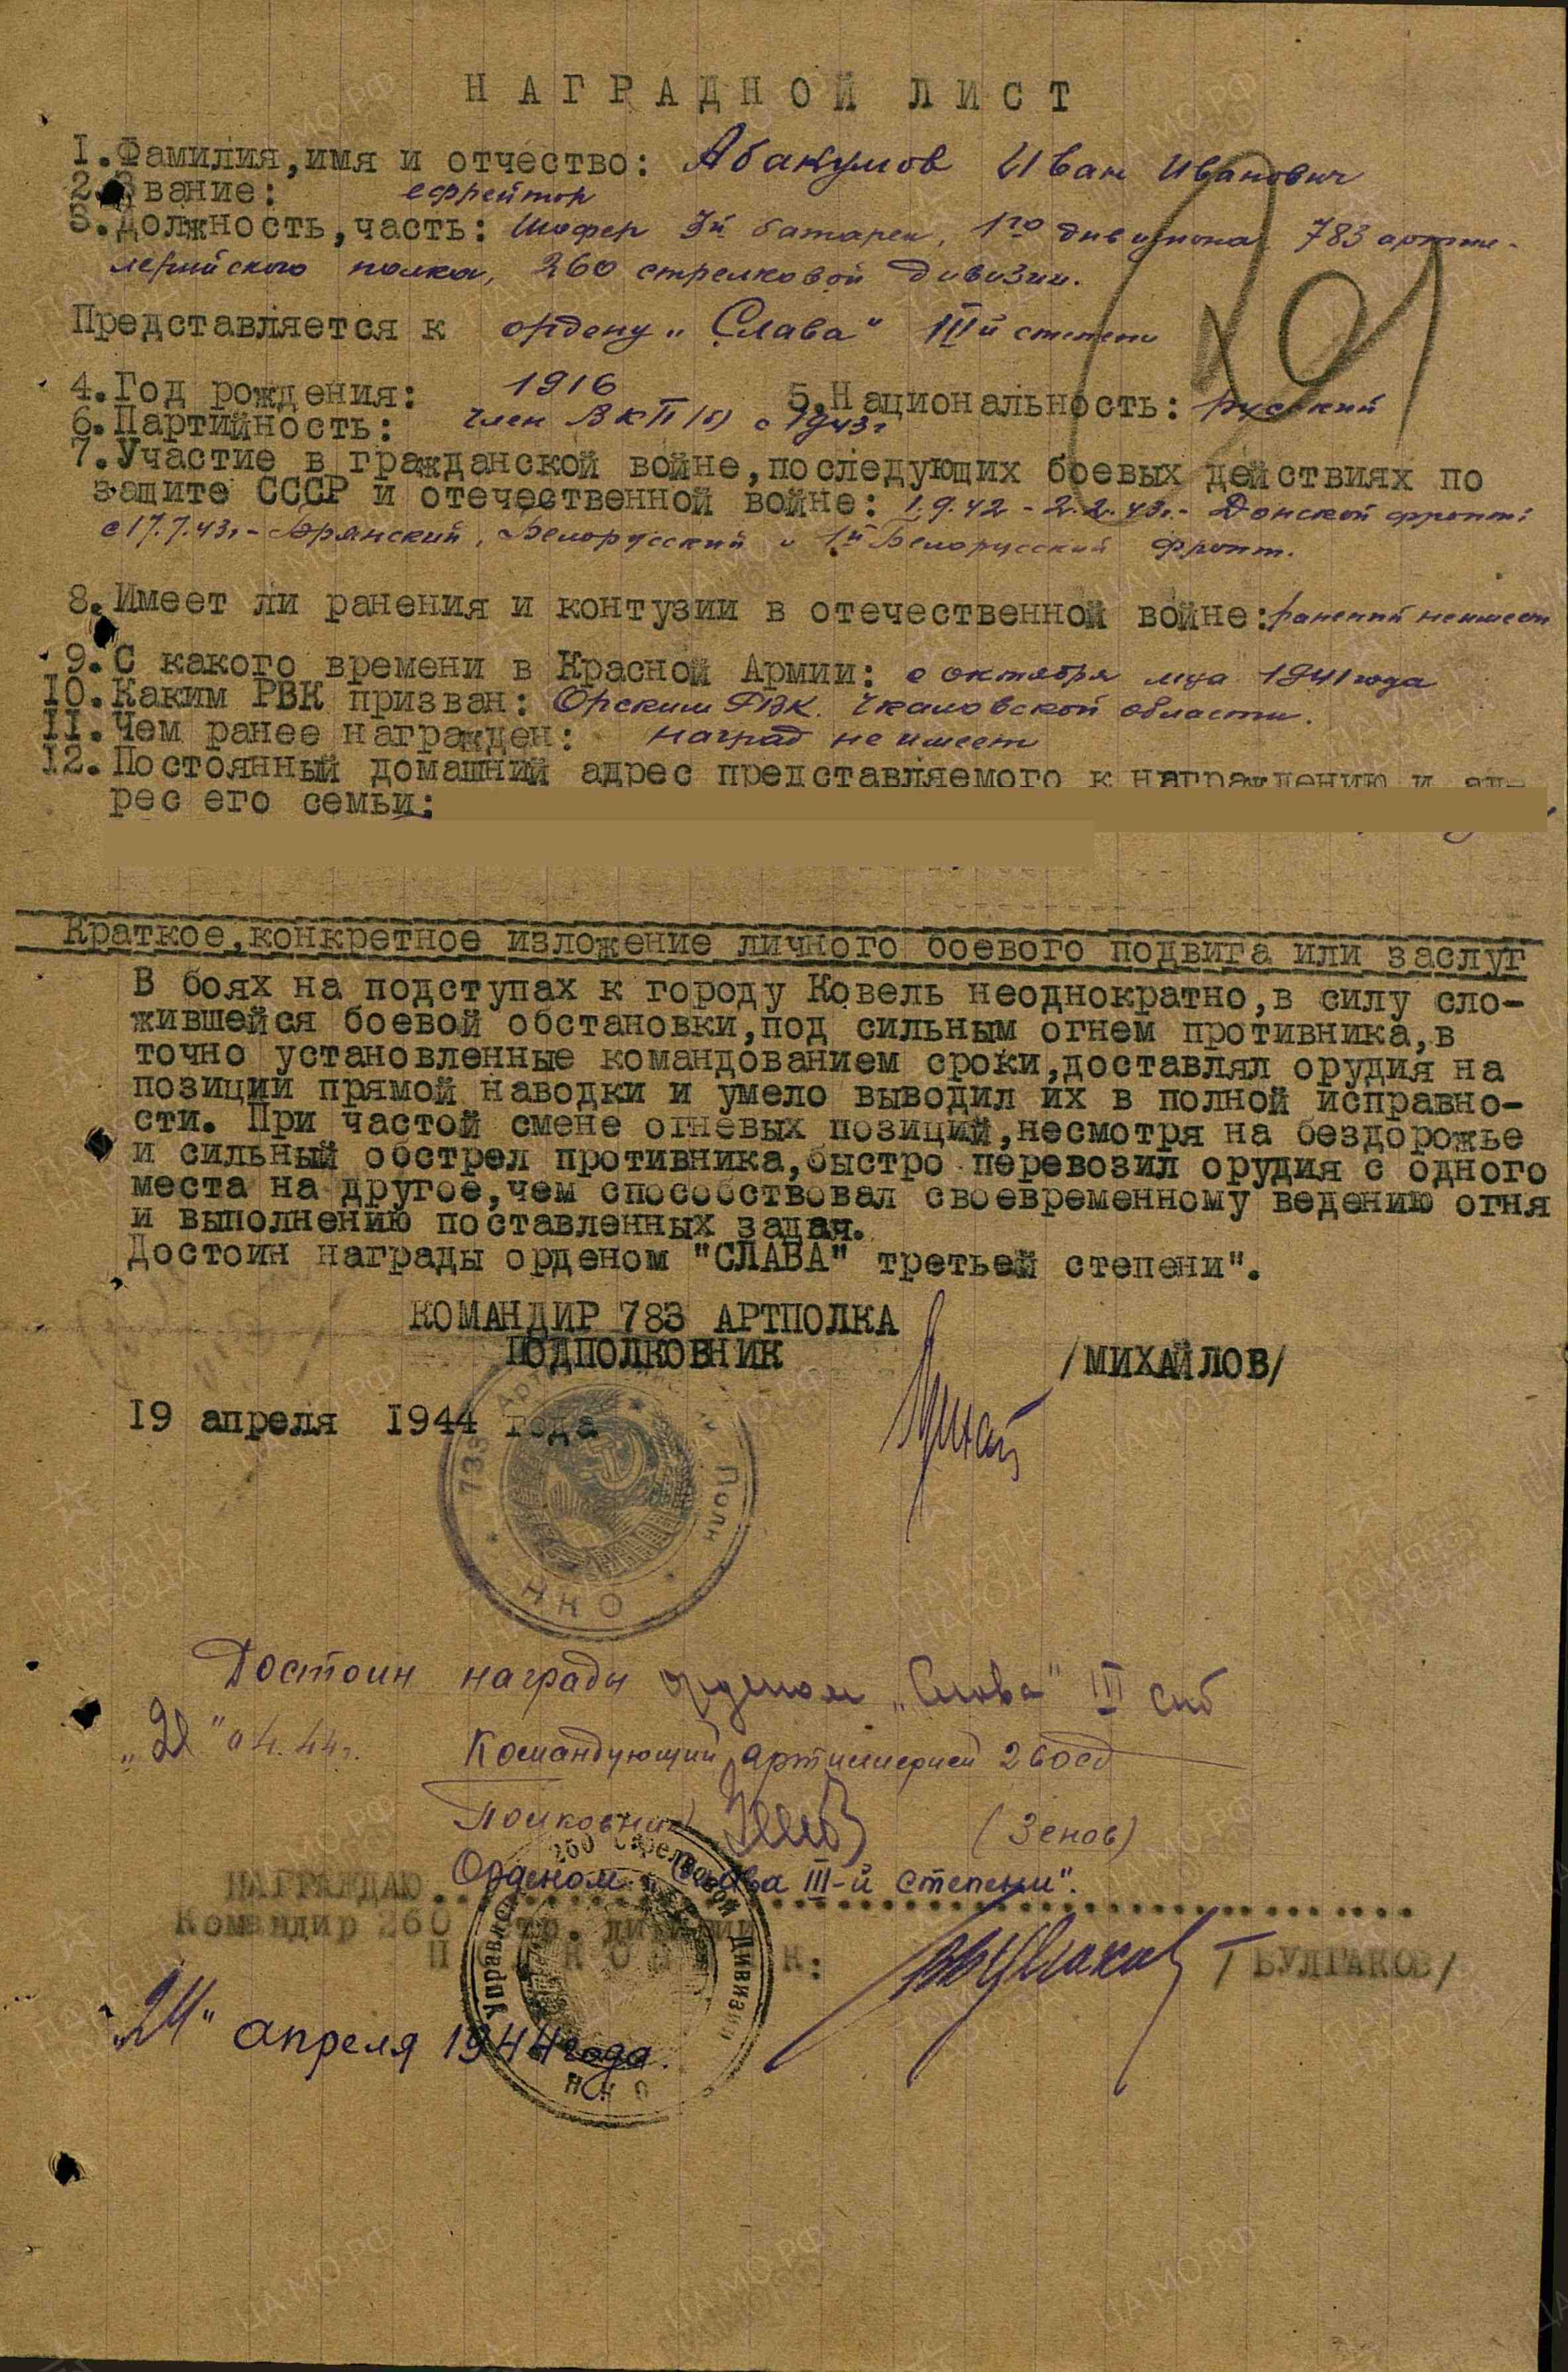 Абакумов И.И. Наградной лист от 19.04.1944 г., орден Славы III степени (архивная копия)